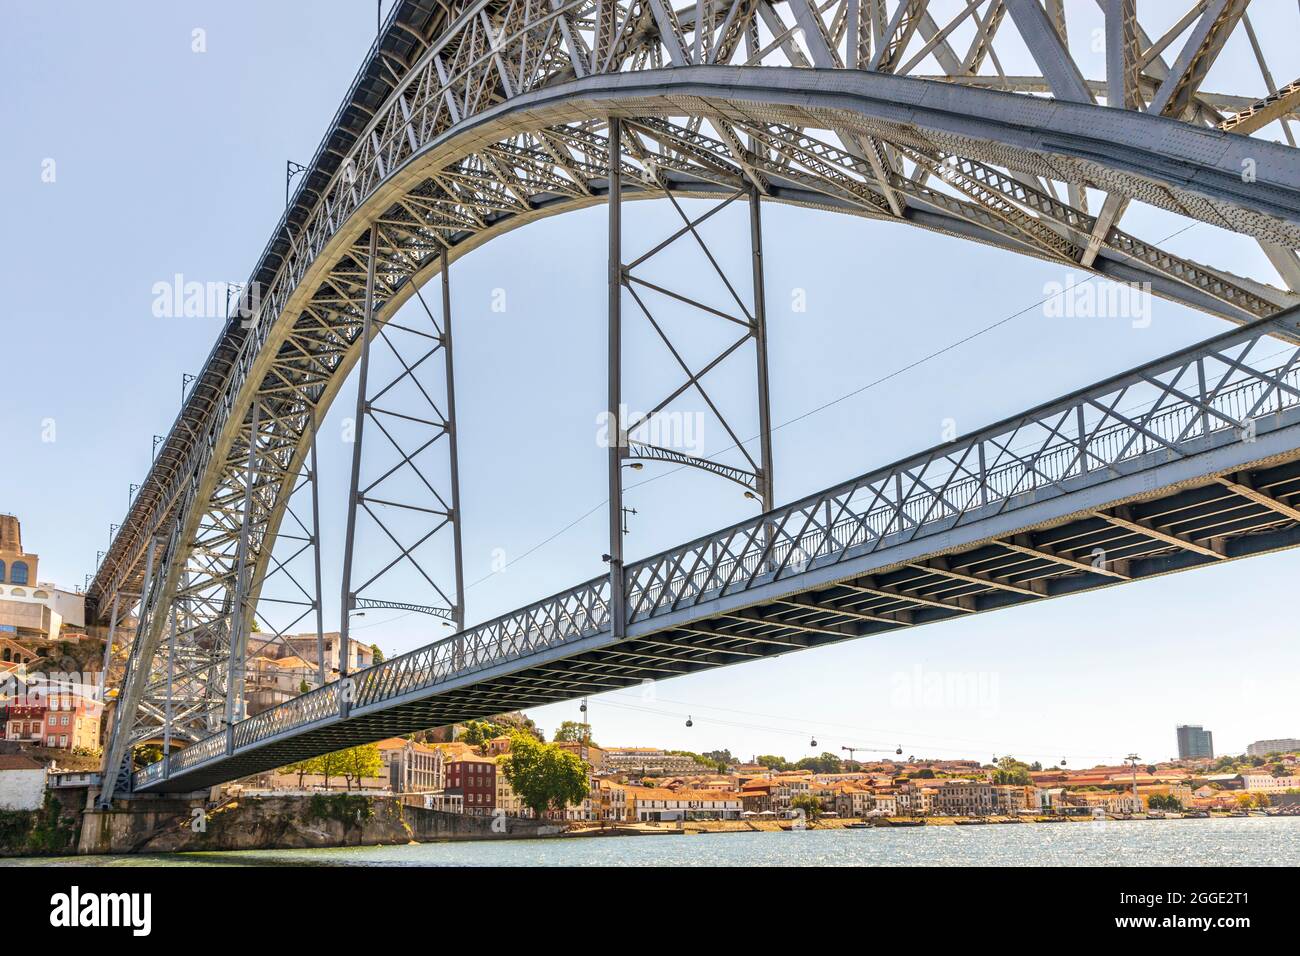 Beautiful iron Dom Luis I bridge over Douro river in Porto, Portugal Stock Photo